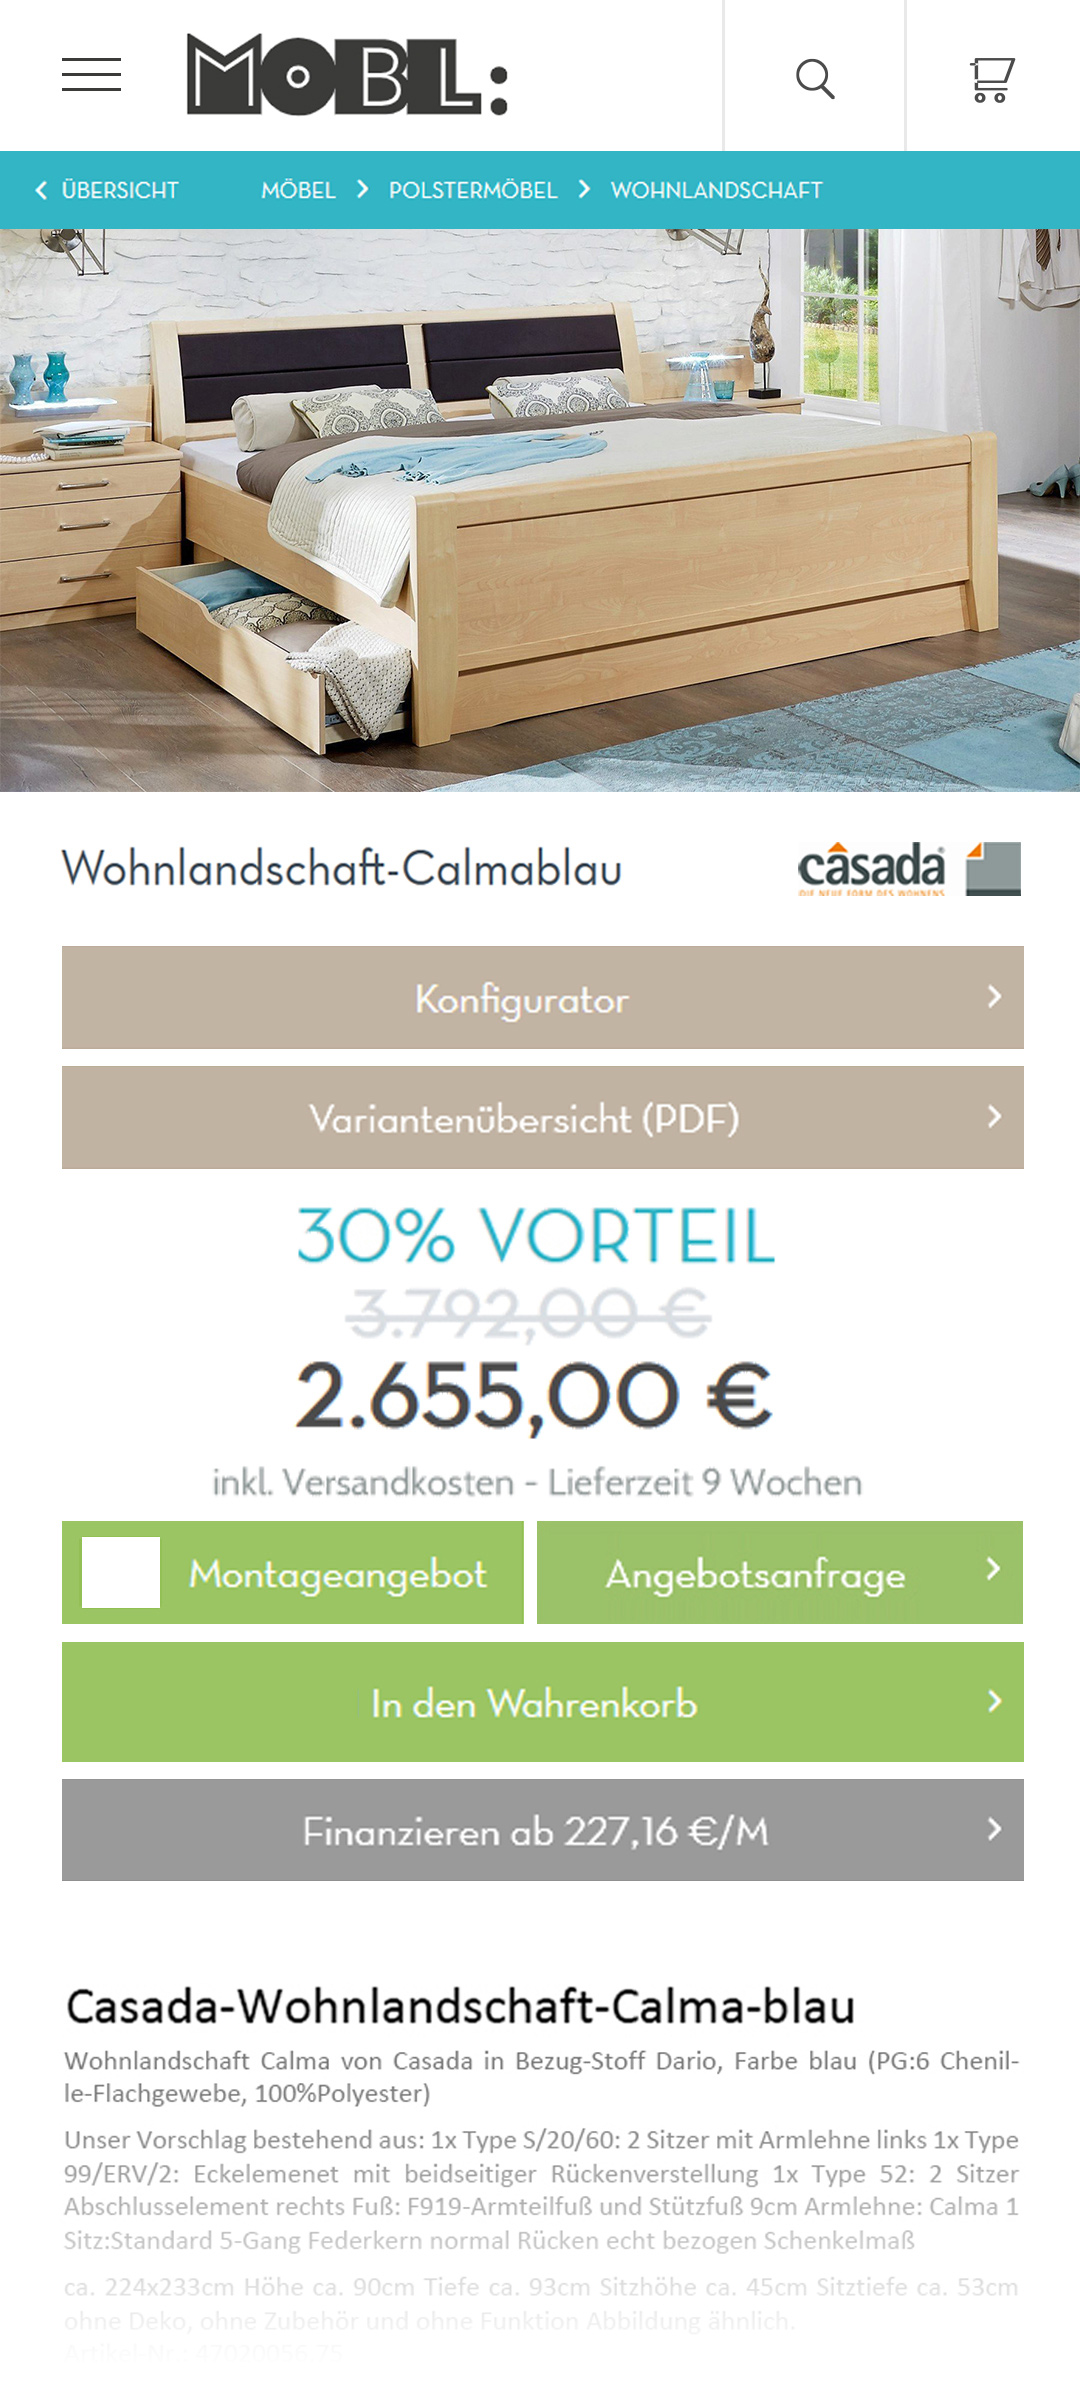 MOBL Online Möbel Shop - Design Update Layout UX UI - Christian Bennat - 2020